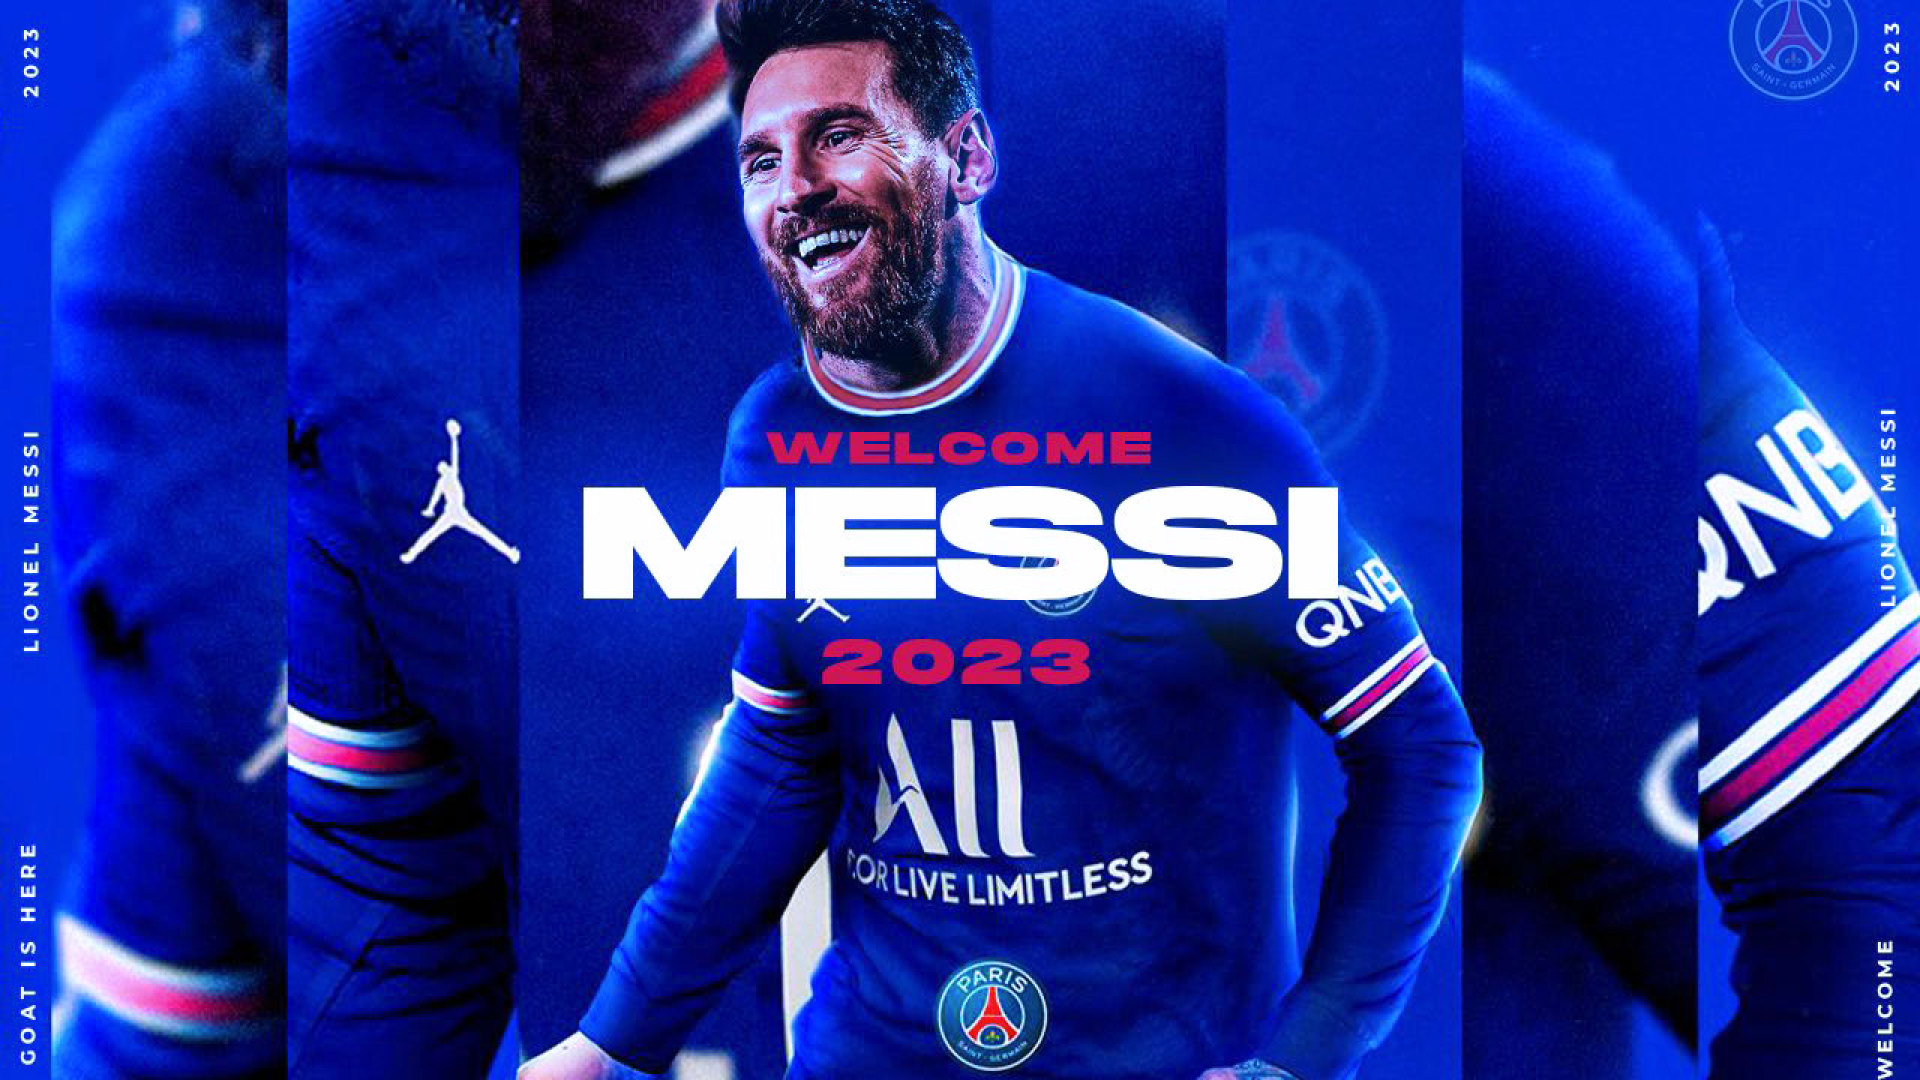 PSG 2024: Sẵn sàng cho chuyến phiêu lưu tuyệt vời sau khi đã giành chiến thắng trước những đối thủ khó khăn trong quá trình chuẩn bị của Paris Saint-Germain. Hãy sẵn sàng để xem những cầu thủ hàng đầu thế giới như Messi, Neymar, Mbappe và nhiều ngôi sao khác thể hiện tối đa tài năng của họ tại đội bóng này trong tương lai.